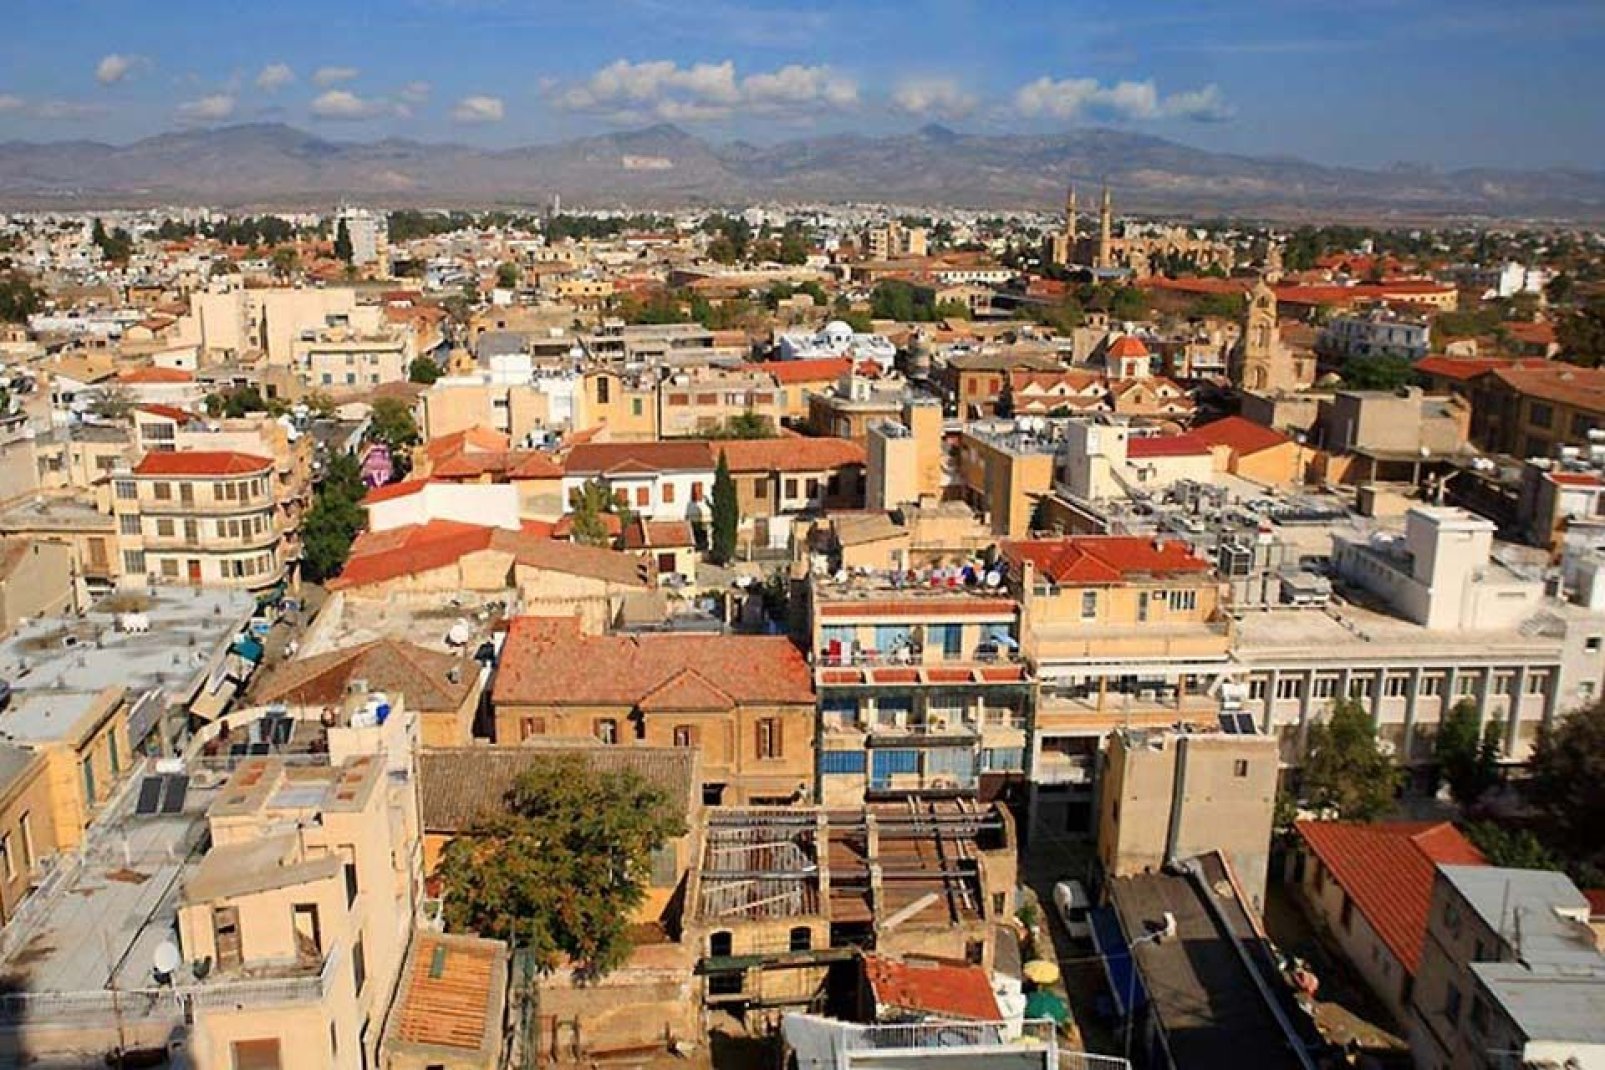 Benché Larnaca e Limassol abbiano acquisito una maggiore importanza, Nicosia rimane il principale polo economico dell'isola. Le stradine dell'antica città brulicano di negozi.